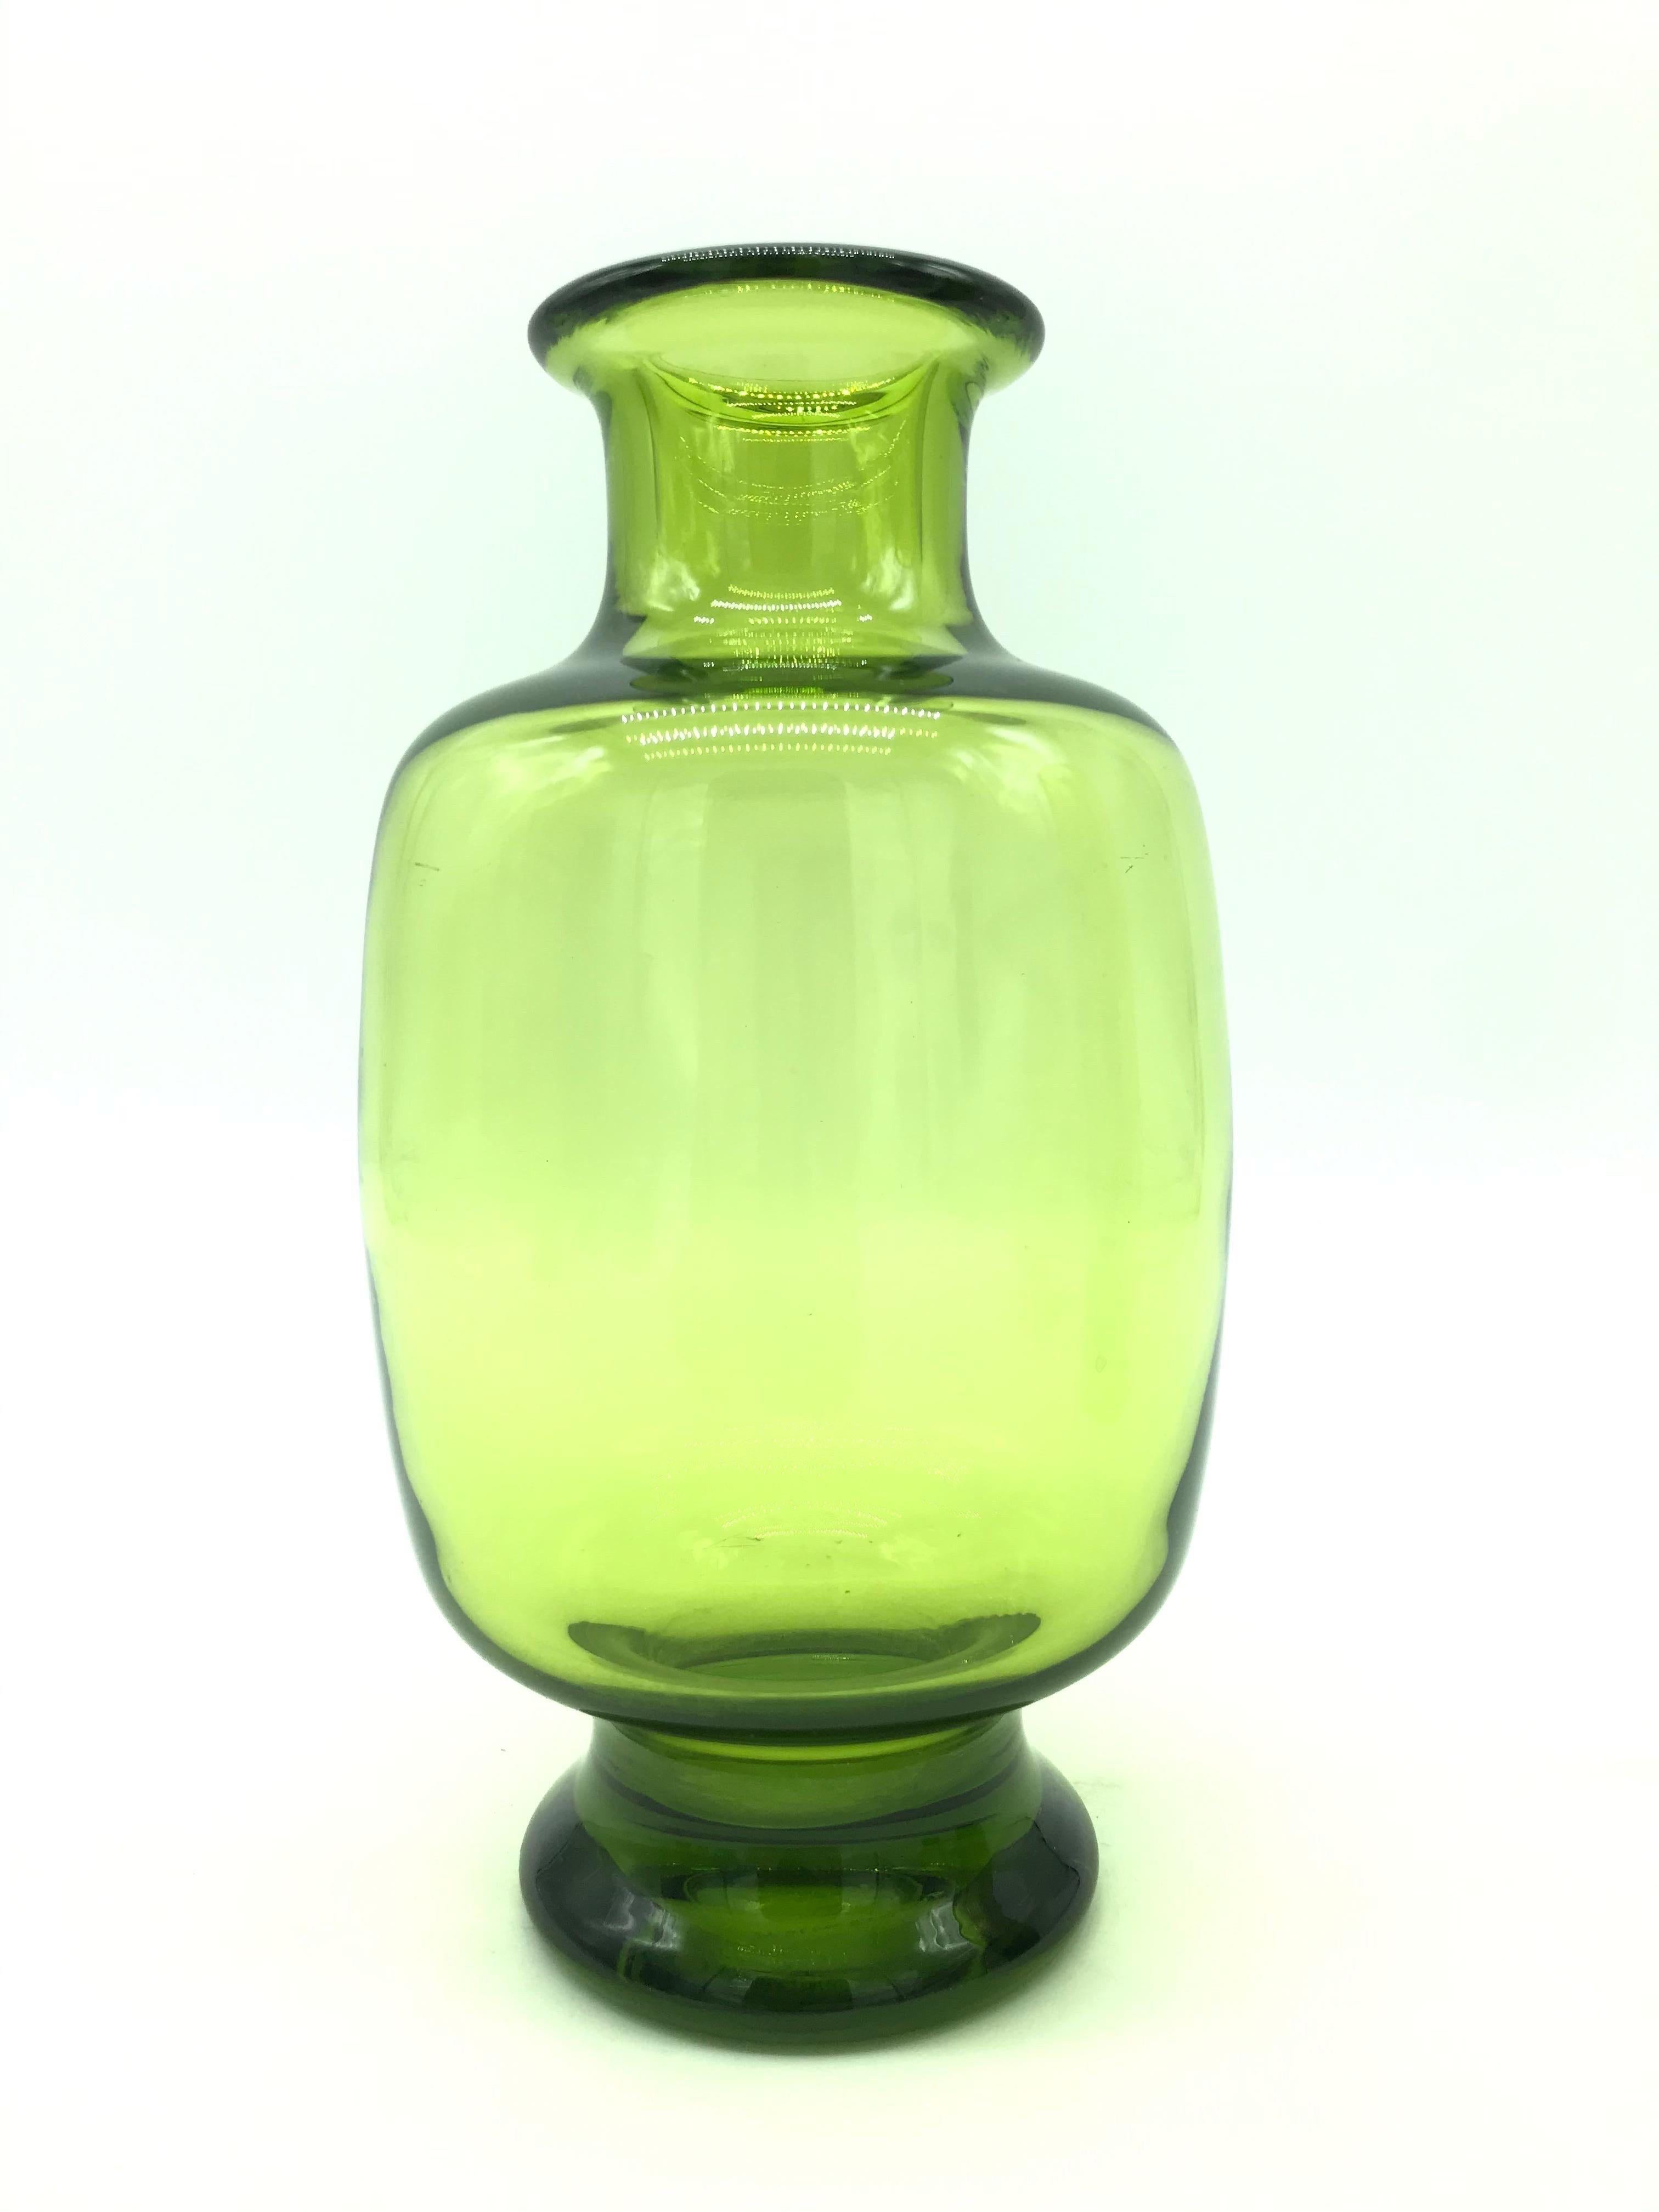 Un rare ensemble de vases vintage de Royal Copenhagen conçus par Per Lutkin pour Holmegaard dans un magnifique verre teinté vert soufflé à la main.
Tous signés et gravés.
Per Lütken était un verrier danois, surtout connu pour ses travaux à la